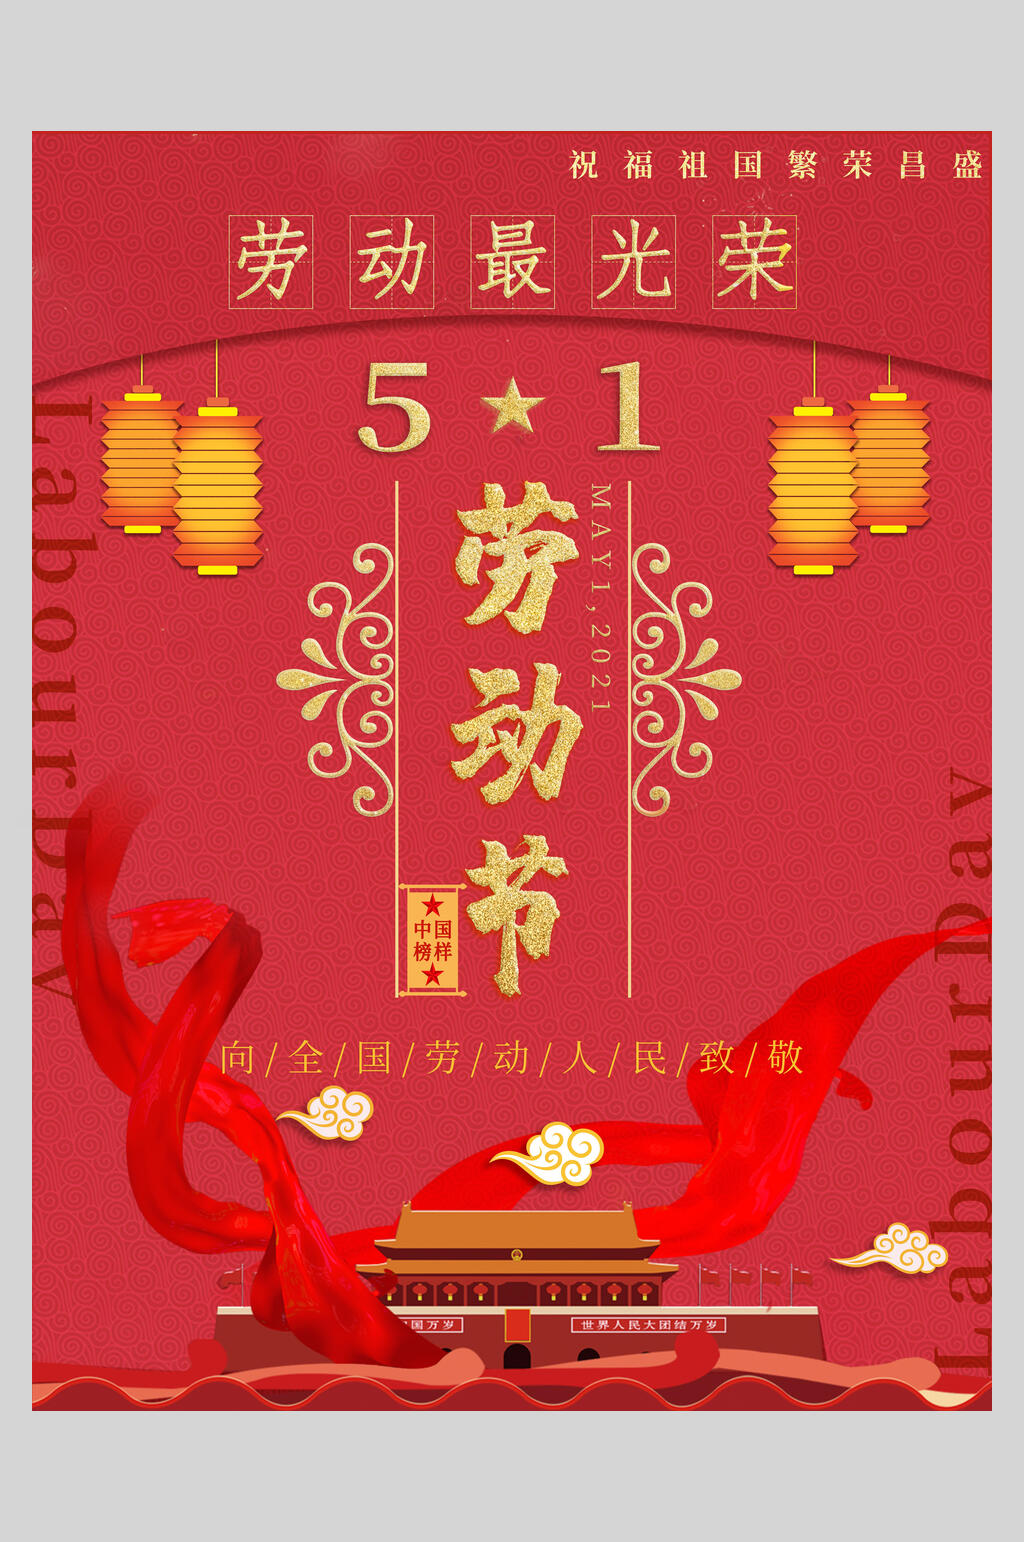 众图网独家提供中国风劳动节快乐传统佳节海报素材免费下载,本作品是